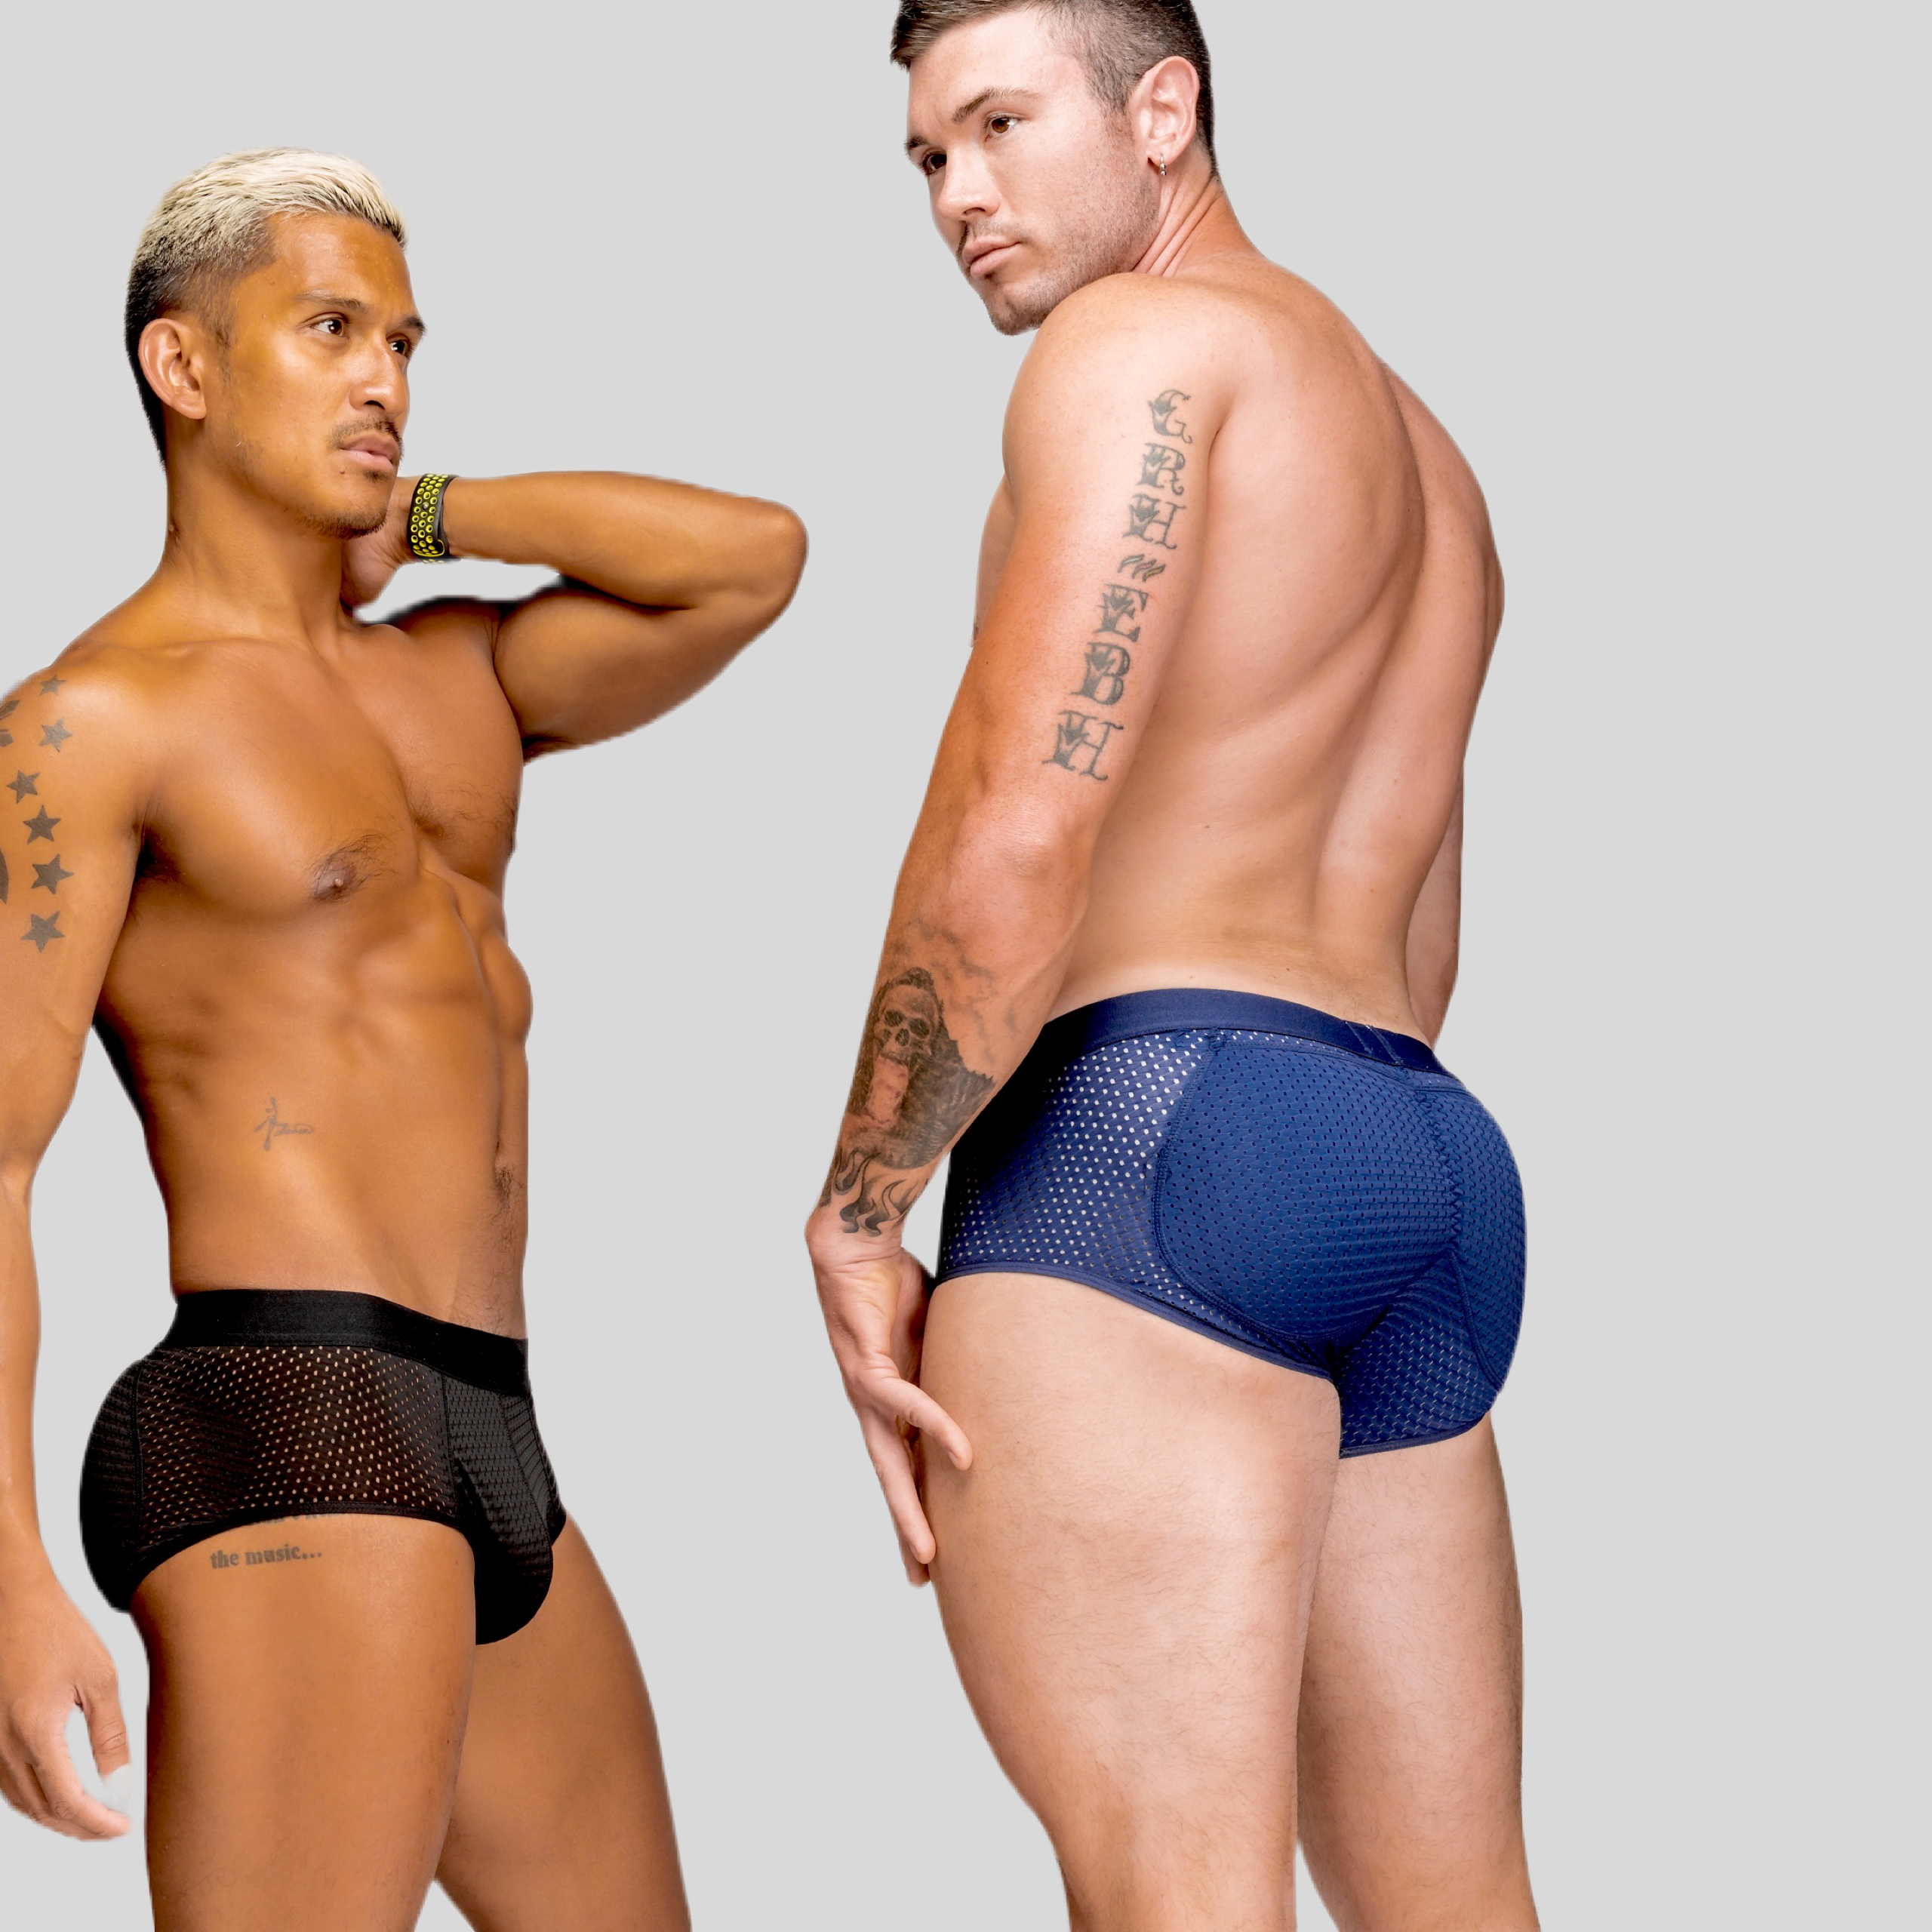 Rosie Men's Padded Underwear Seamless Butt Lifter Hip Enhancer Shaper Briefs